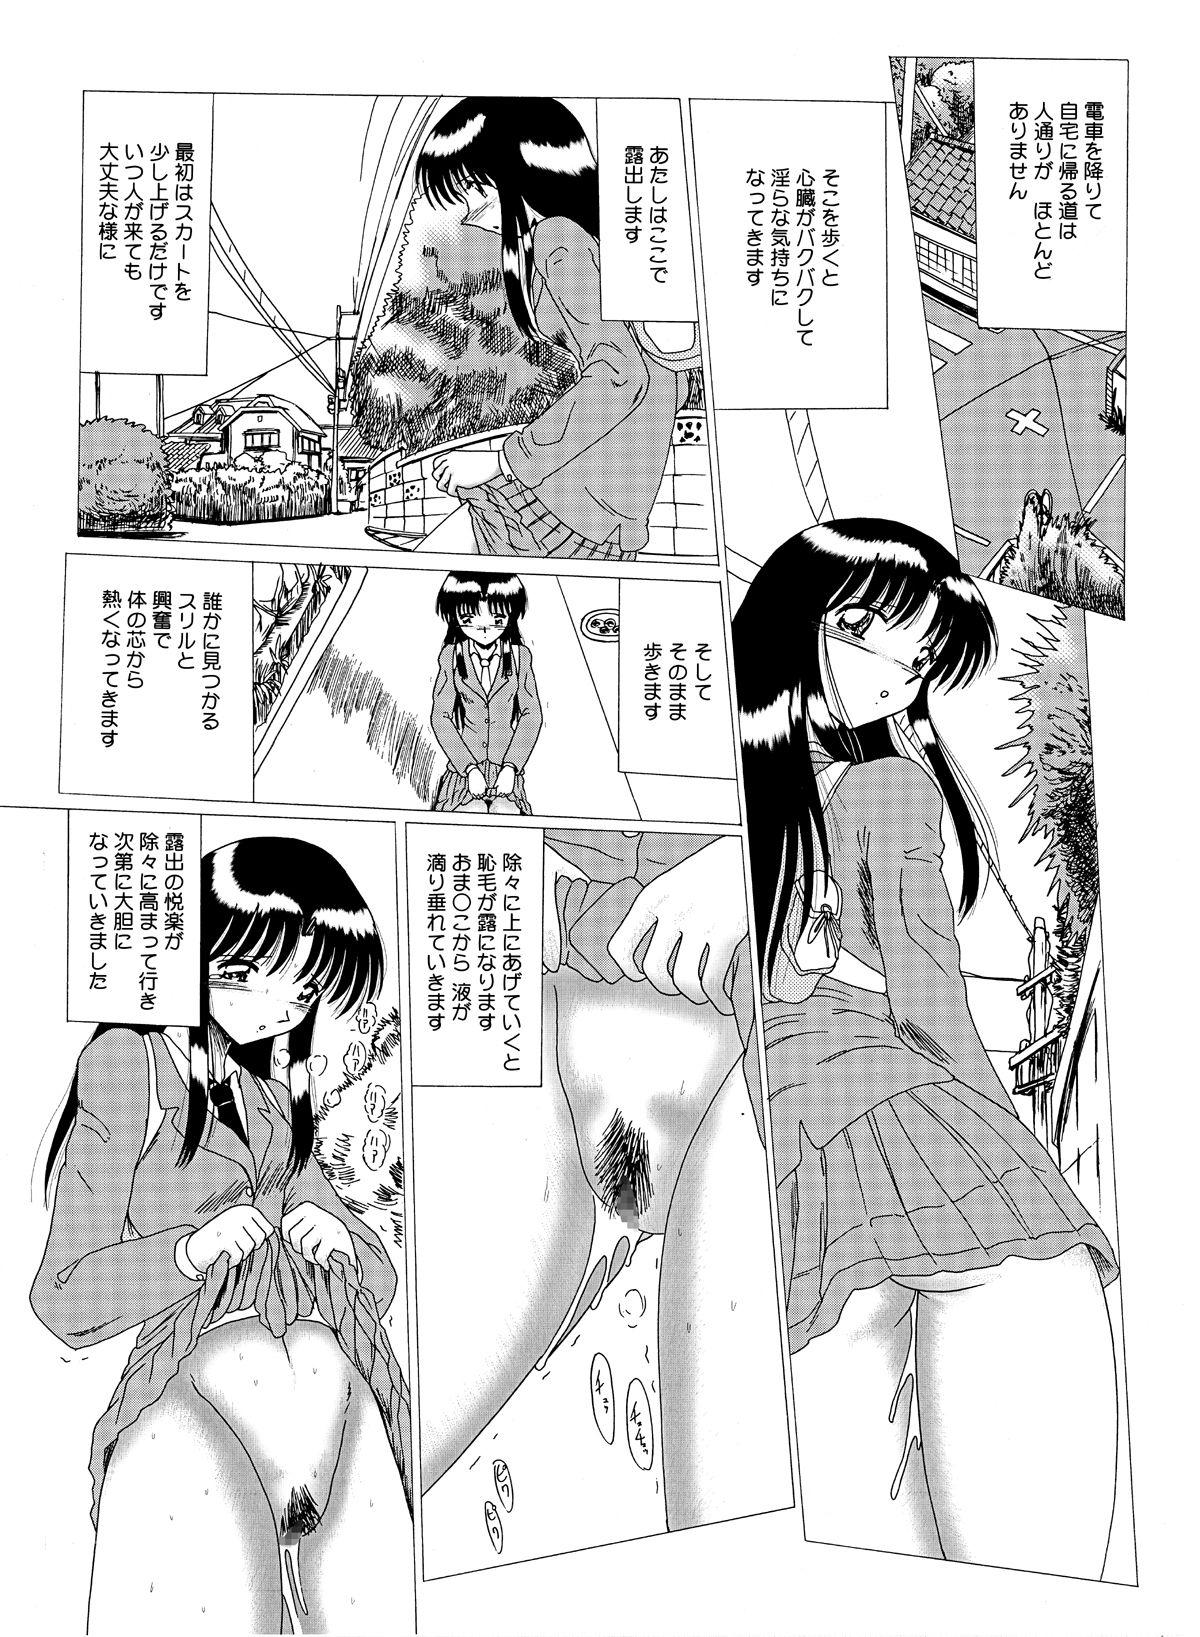 Swingers Shinsei Maso no Kiroku 1 - Original Ride - Page 7